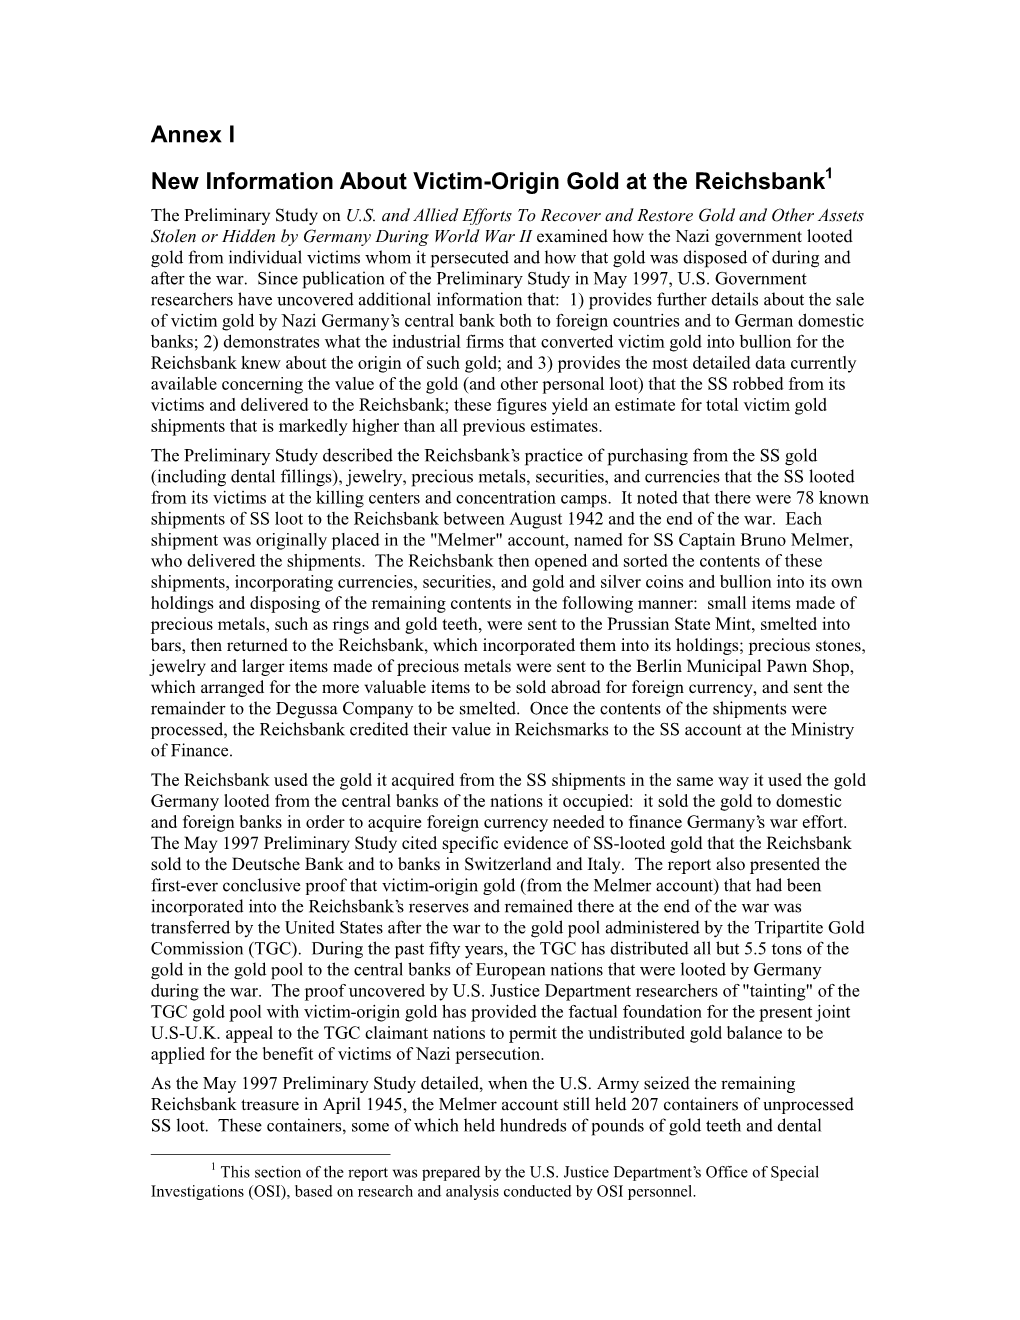 Annex I New Information About Victim-Origin Gold at the Reichsbank